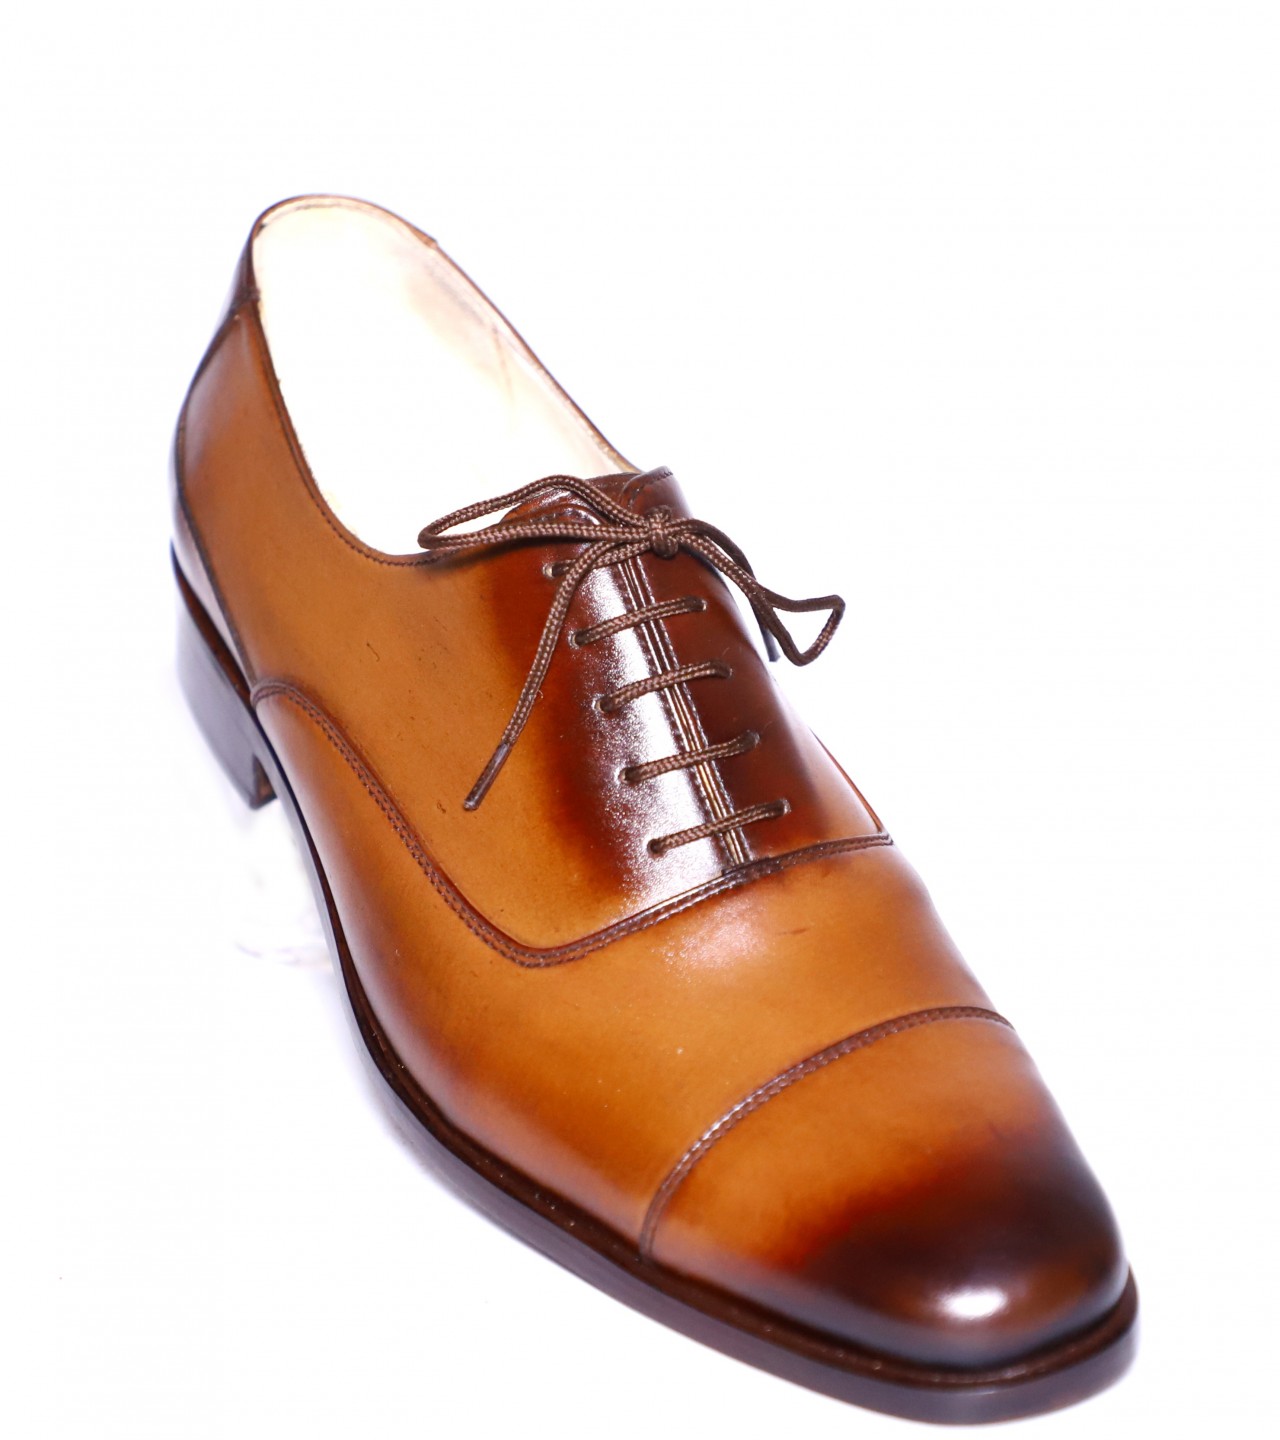 men formal shoes